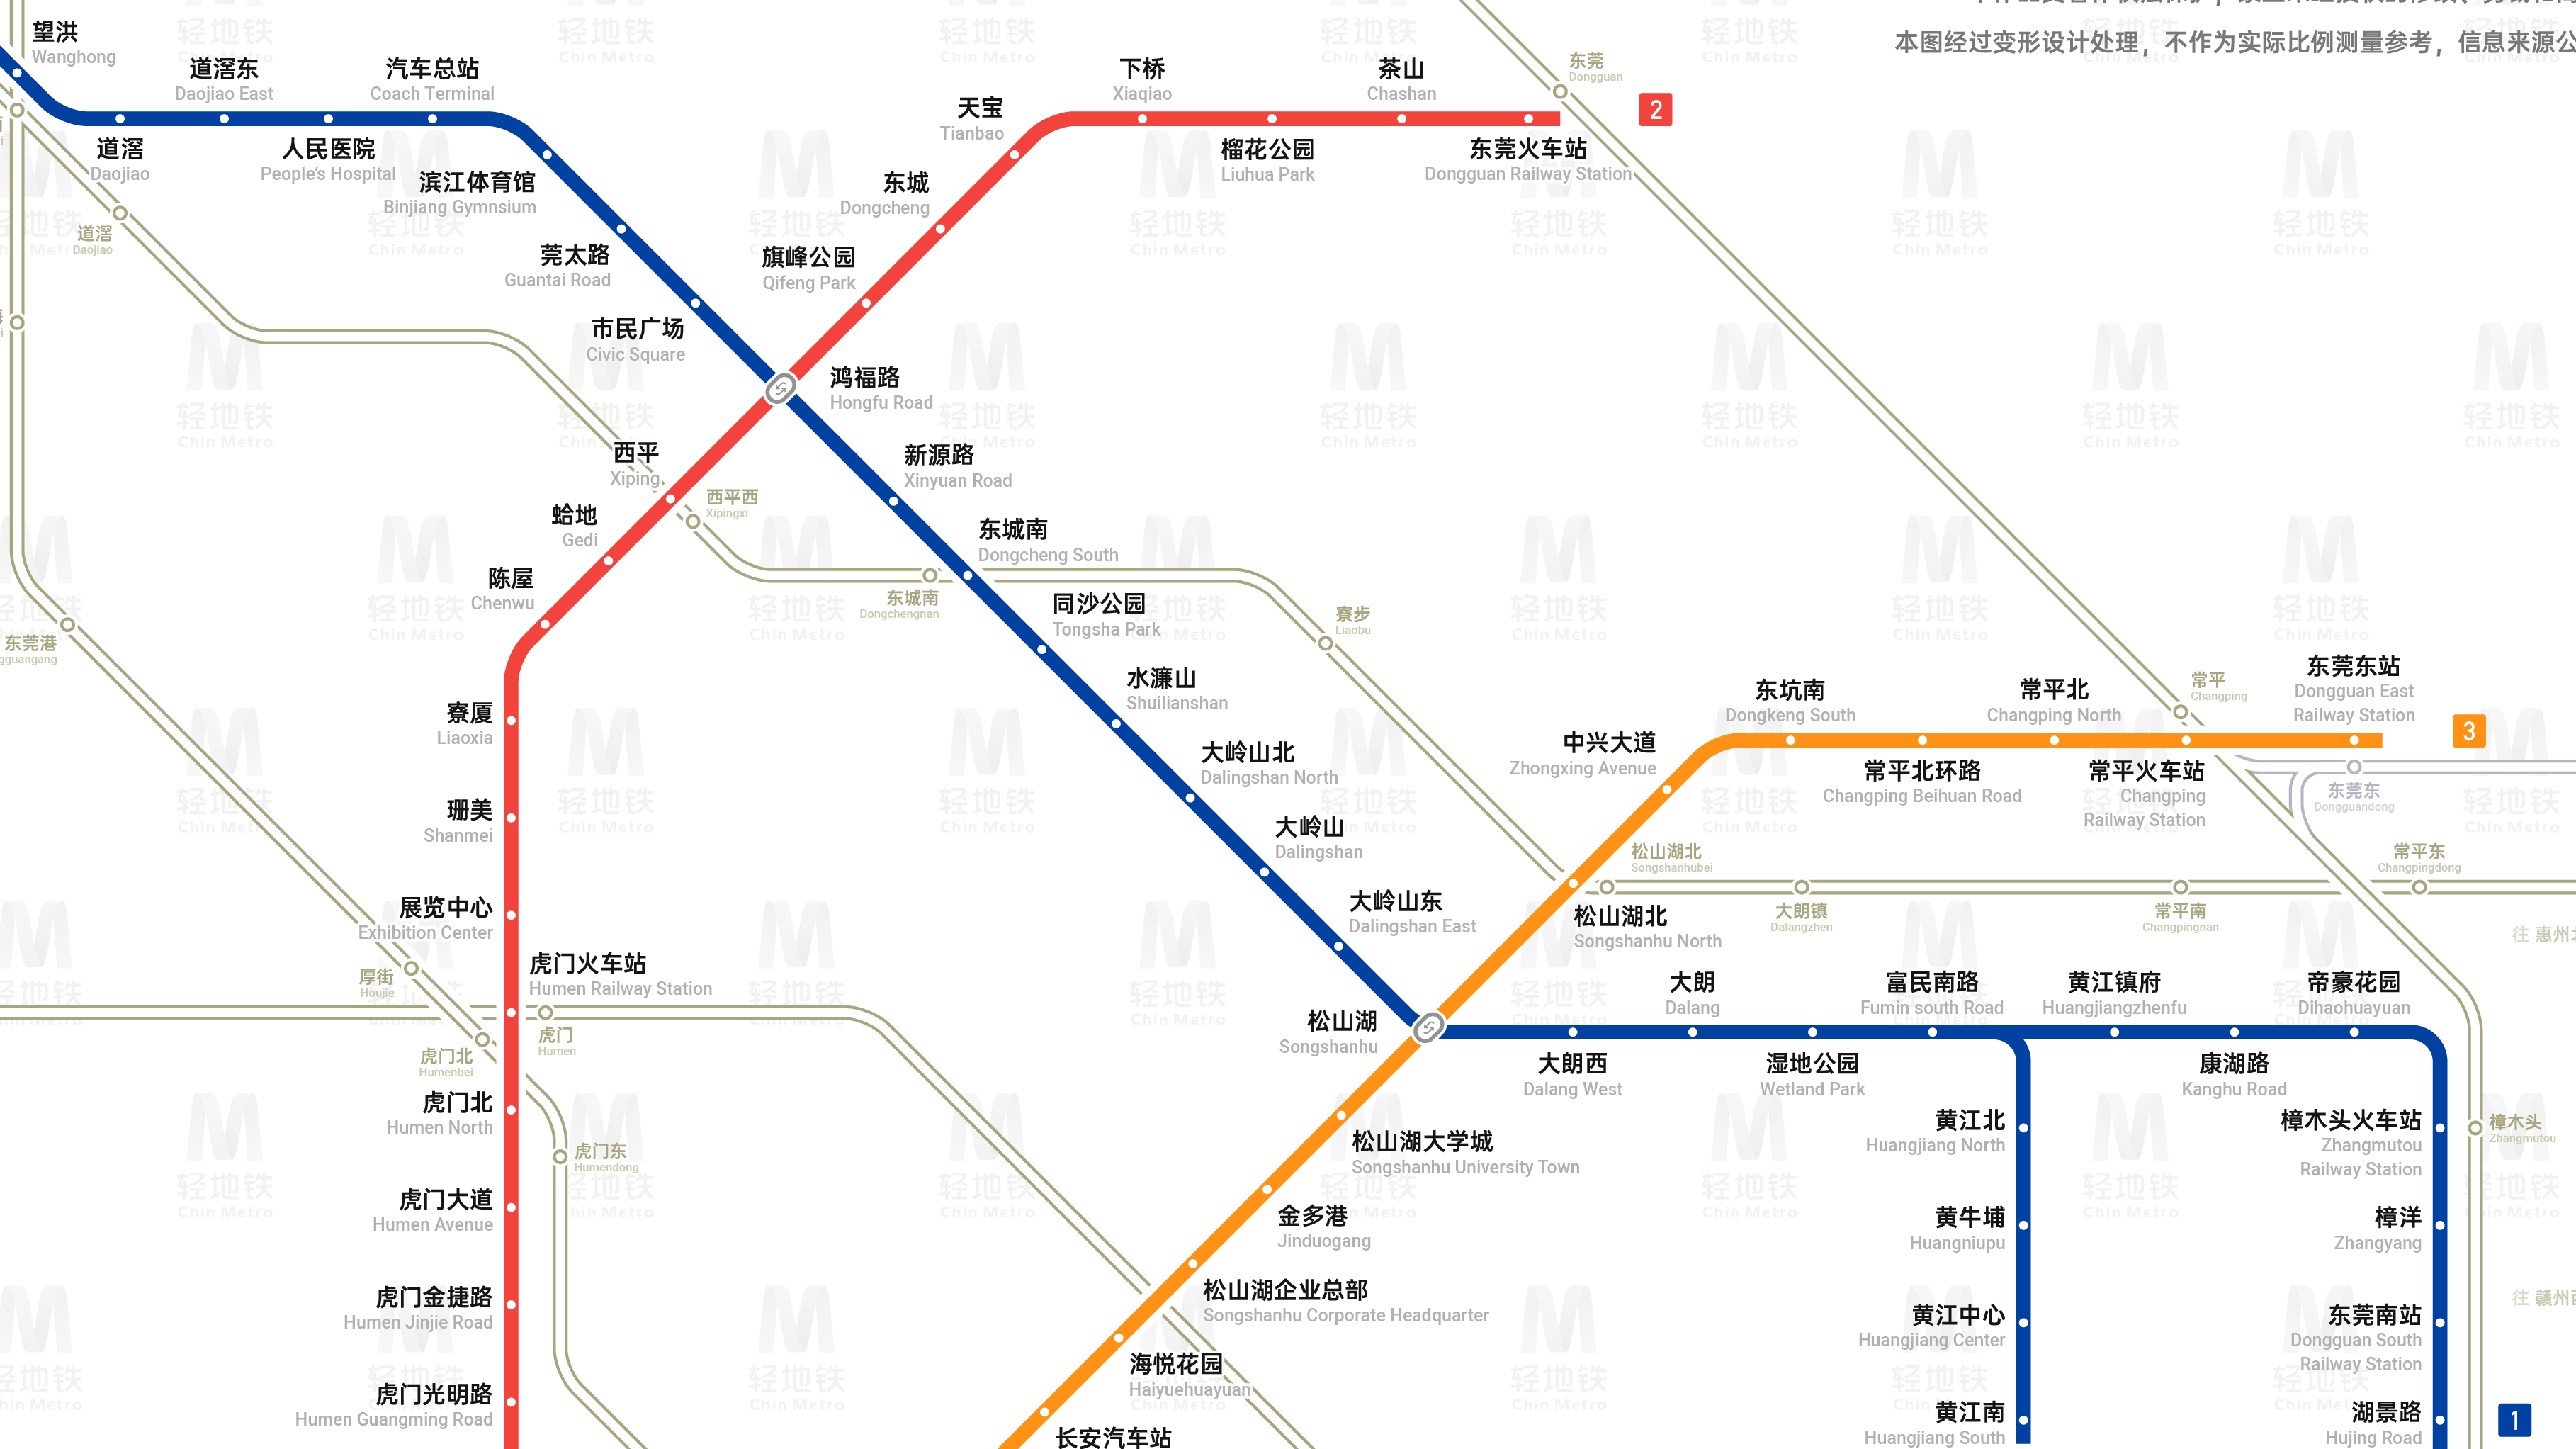 东莞地铁线路图下载-东莞市轨道交通规划图(至2030)下载 最新高清无水印版-IT猫扑网